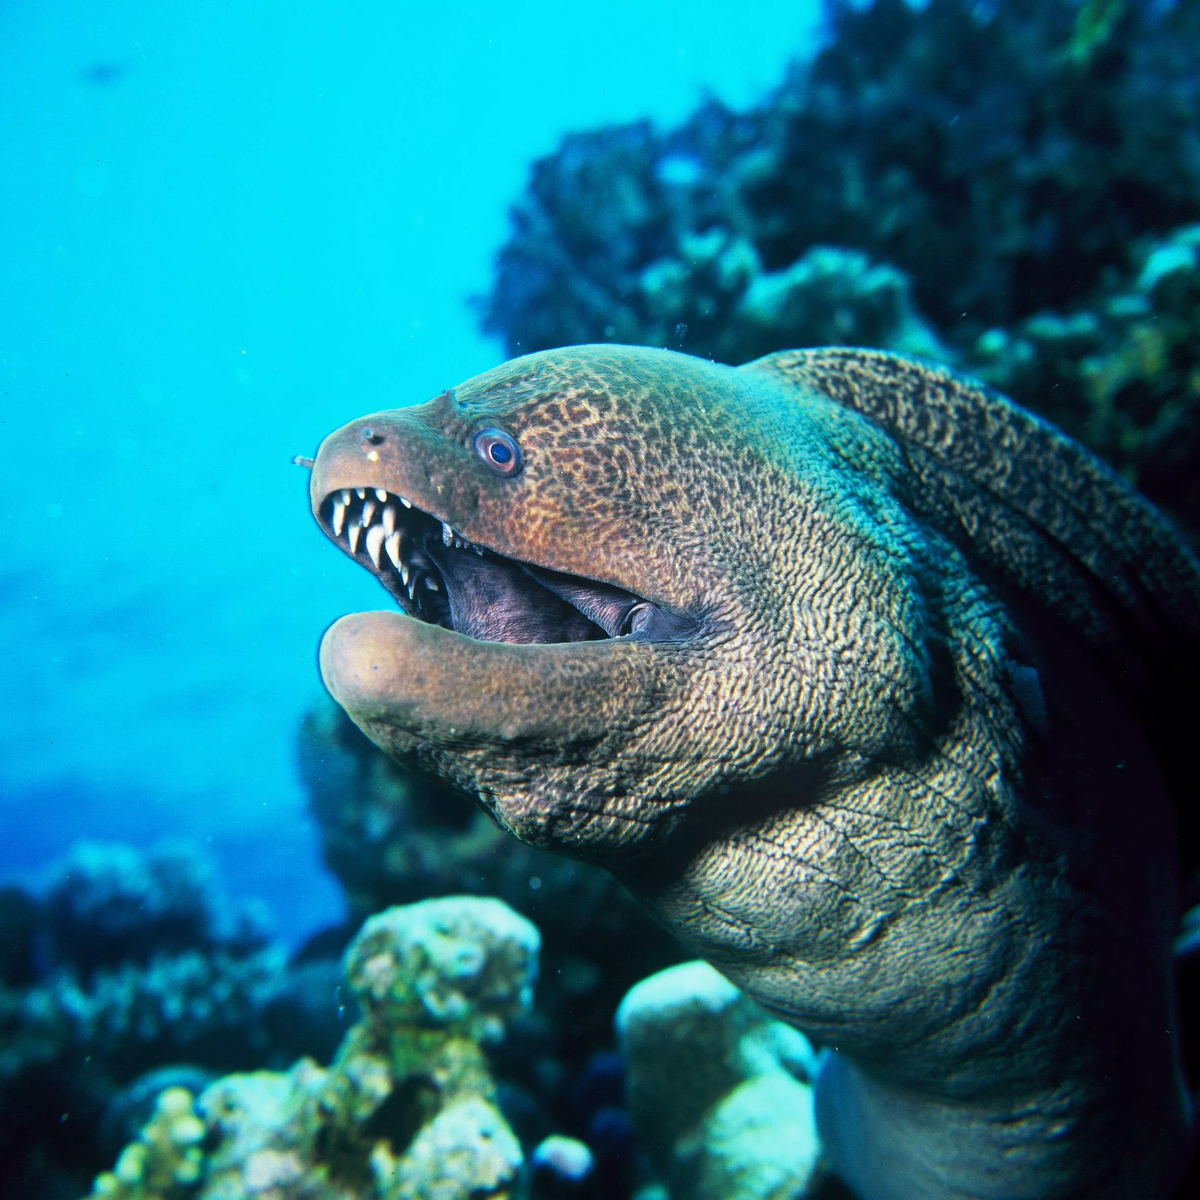 Мурена - одна из самых страшных и хищных рыб в океане